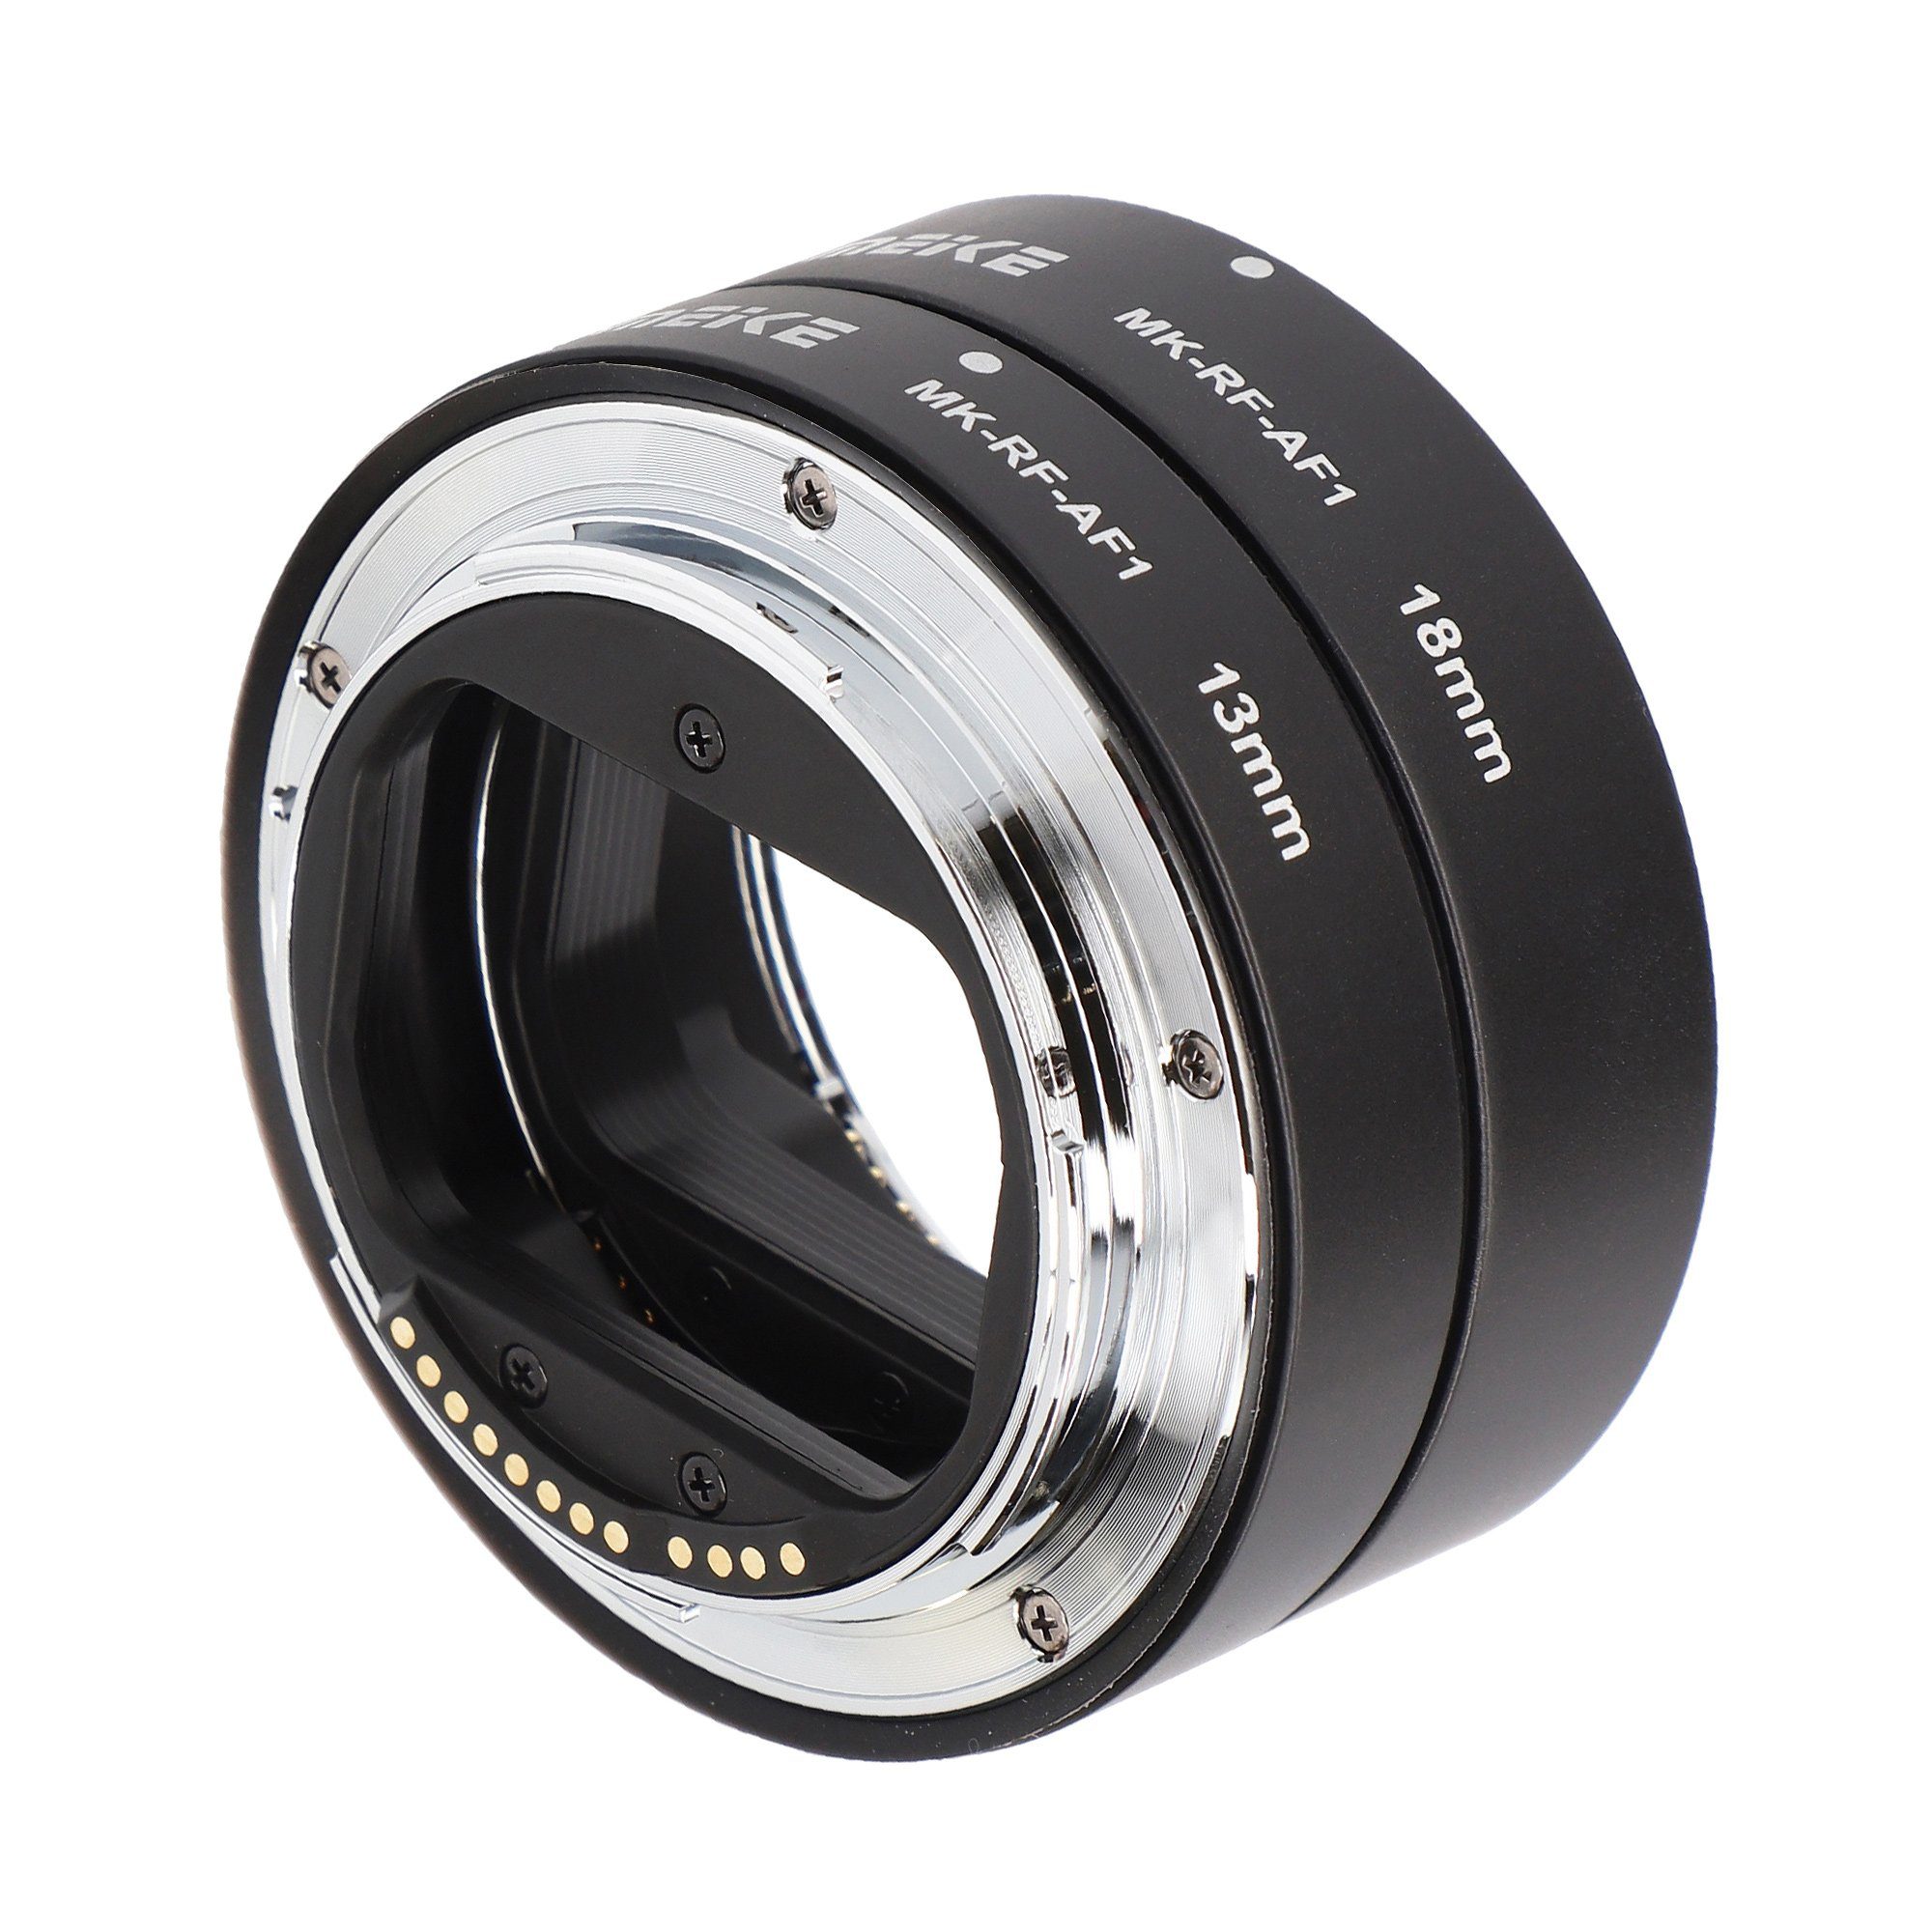 Meike Canon R Automatik-Makro-Zwischenringe MK-RF-AF1 Systemkameras Makroobjektiv für EOS